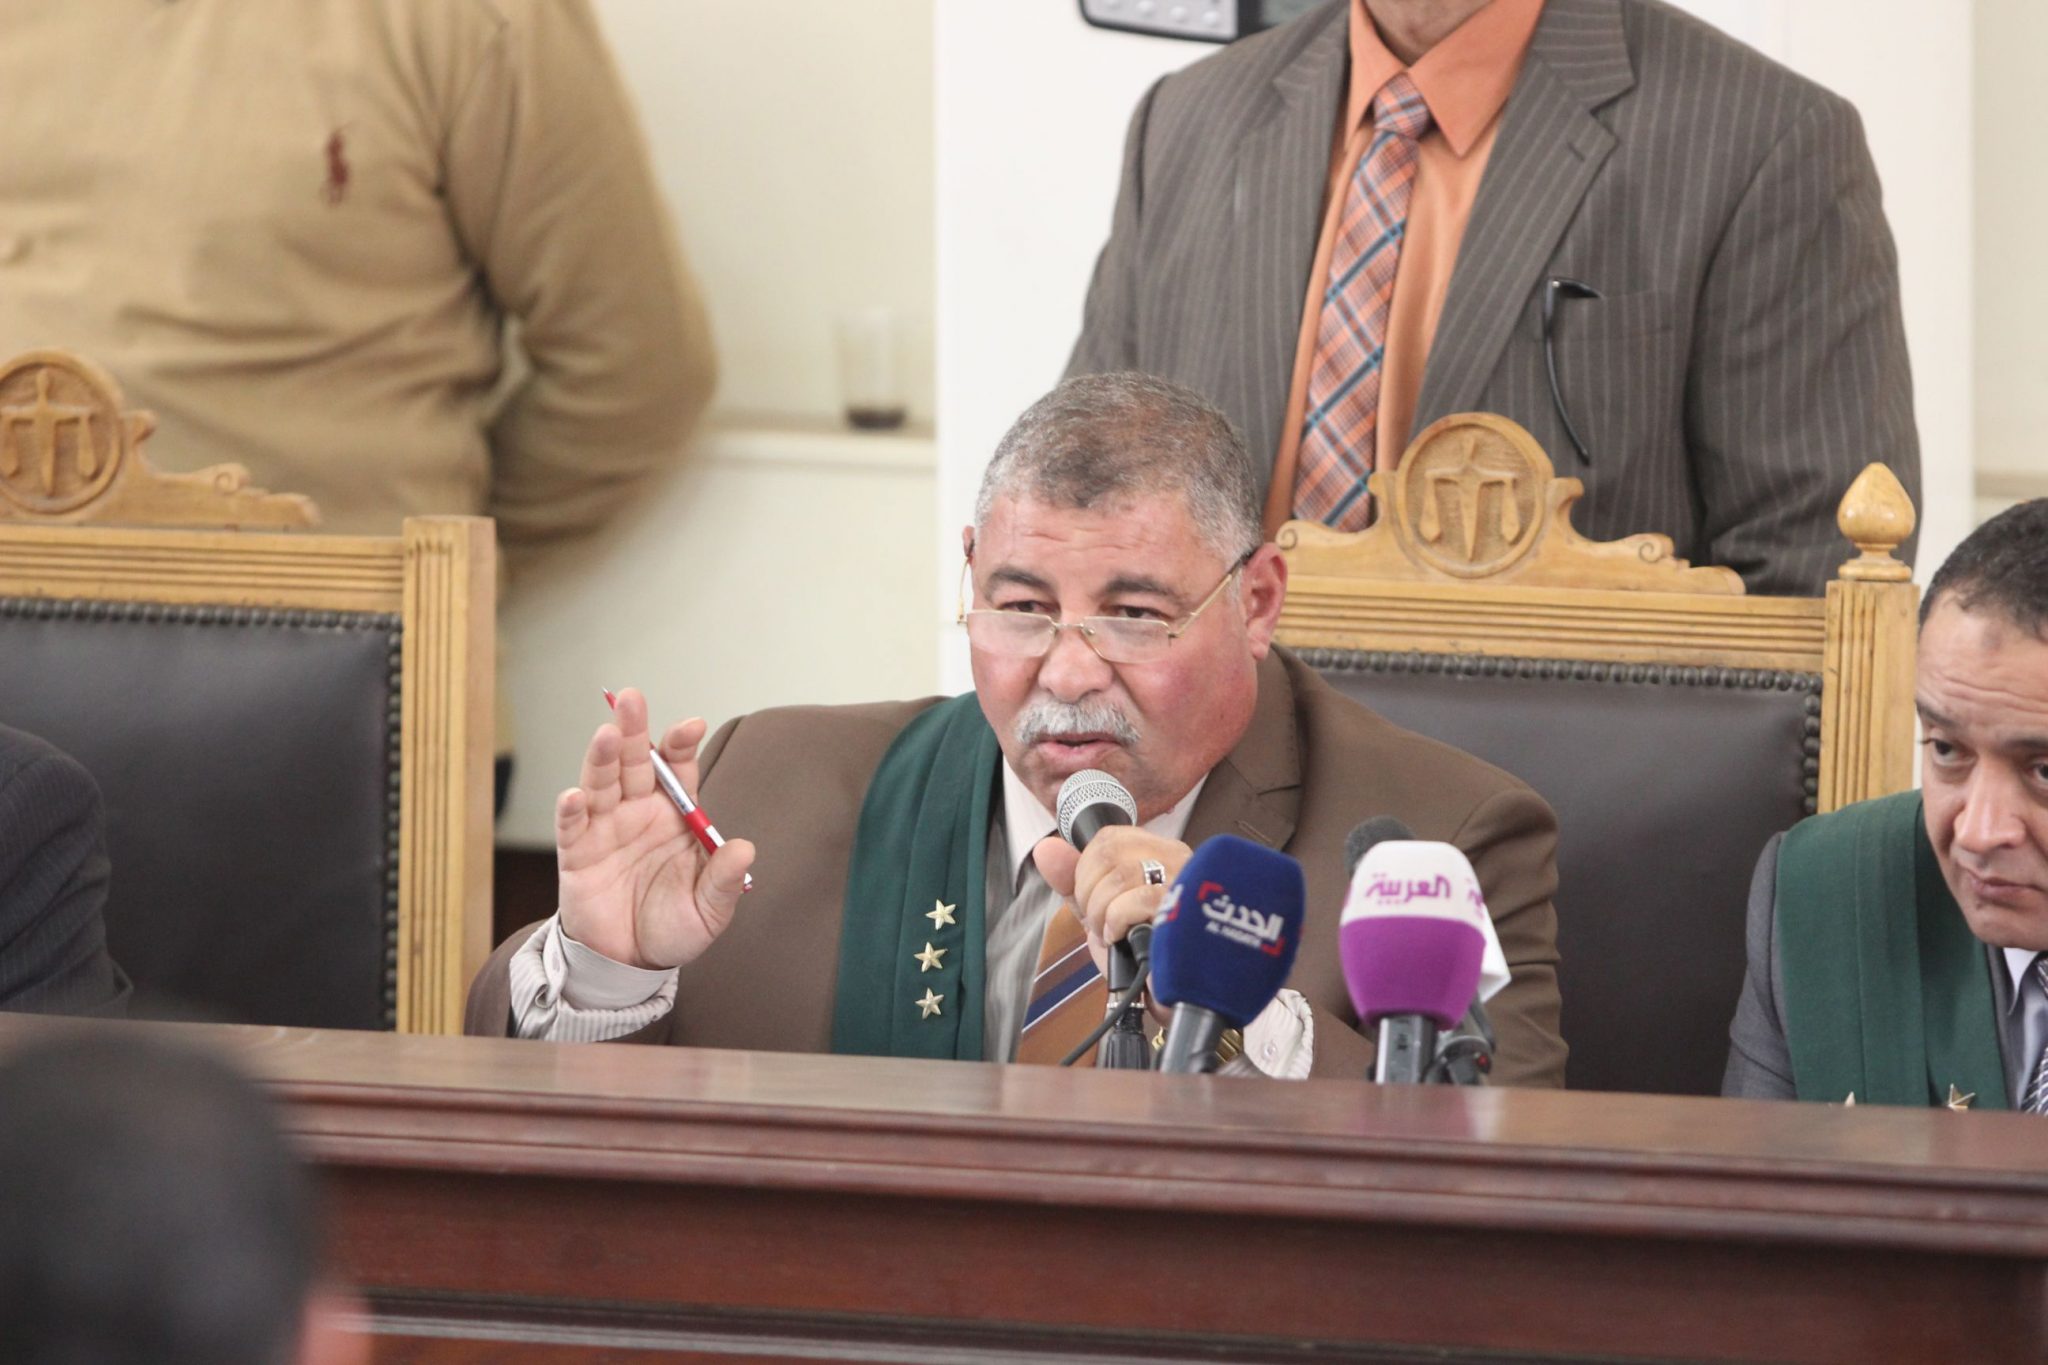   تأجيل محاكمة المتهمين بخلية مطروح التابعة لتنظيم "داعش"  فرع ليبيا